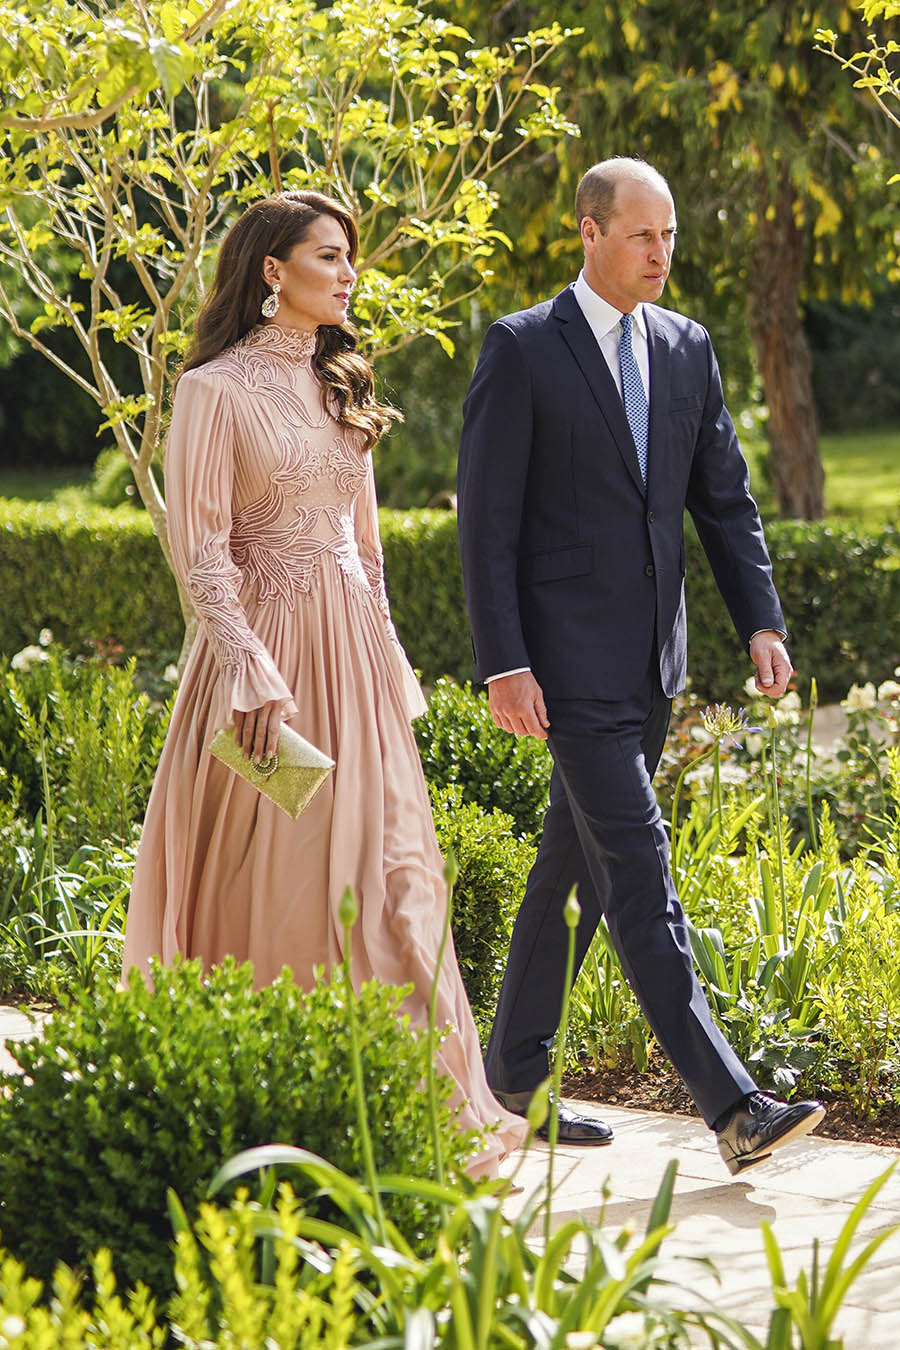 Victoria och Daniel på kungligt bröllop i Jordanien